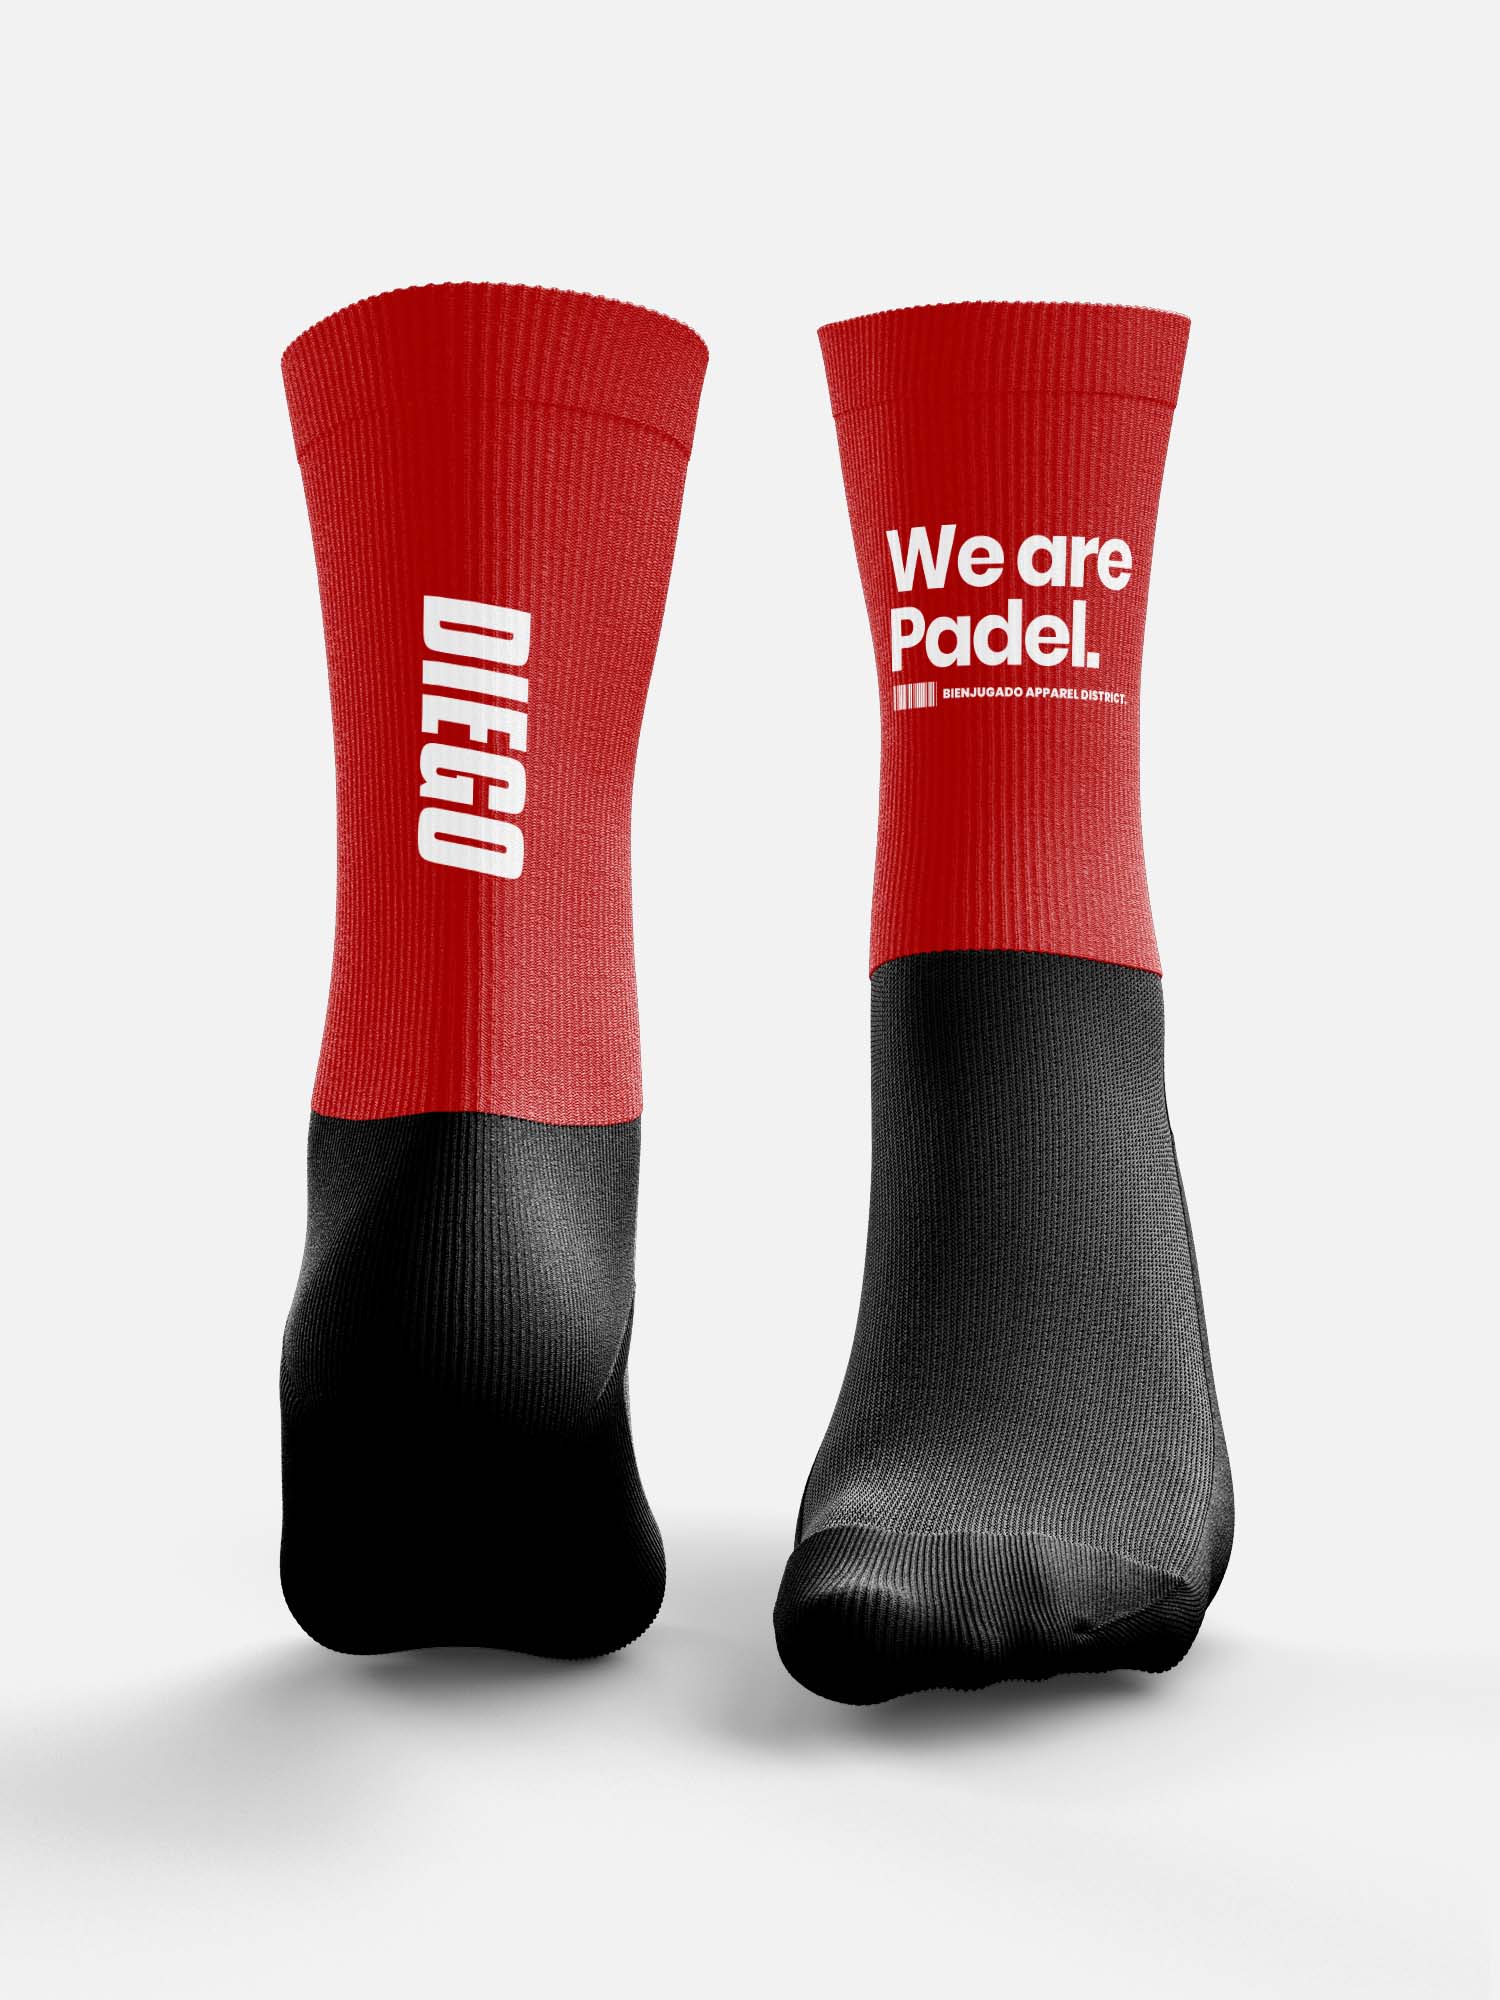 Padel Fun Socks - We Are Padel